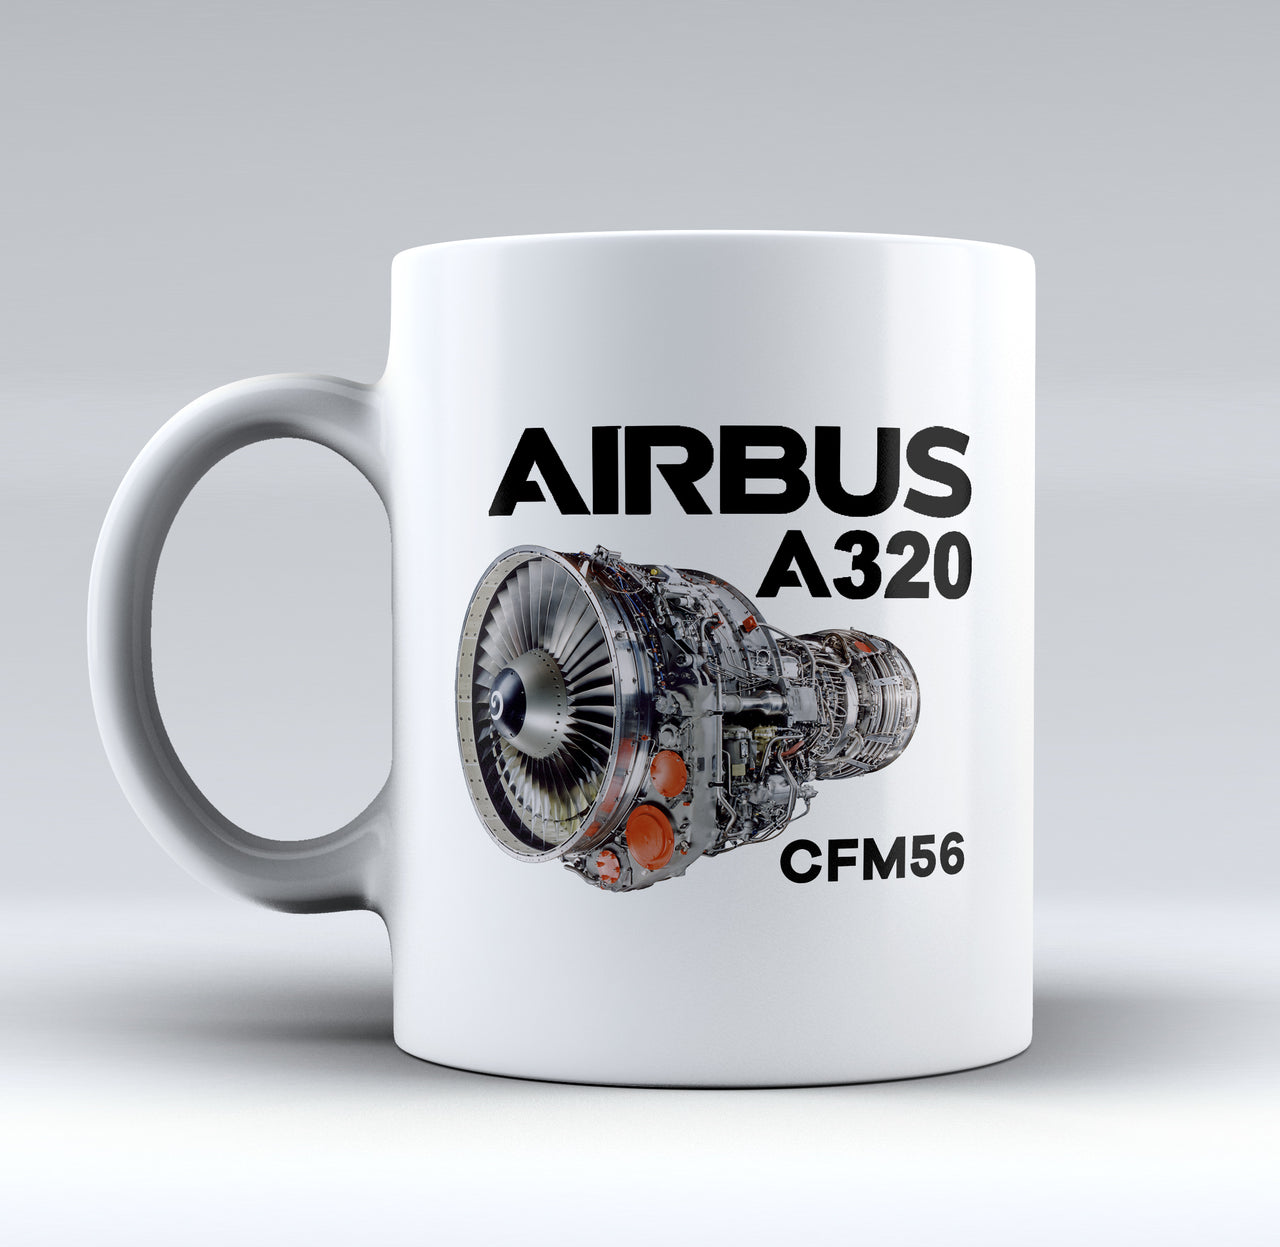 Airbus A320 & CFM56 Engine Designed Mugs